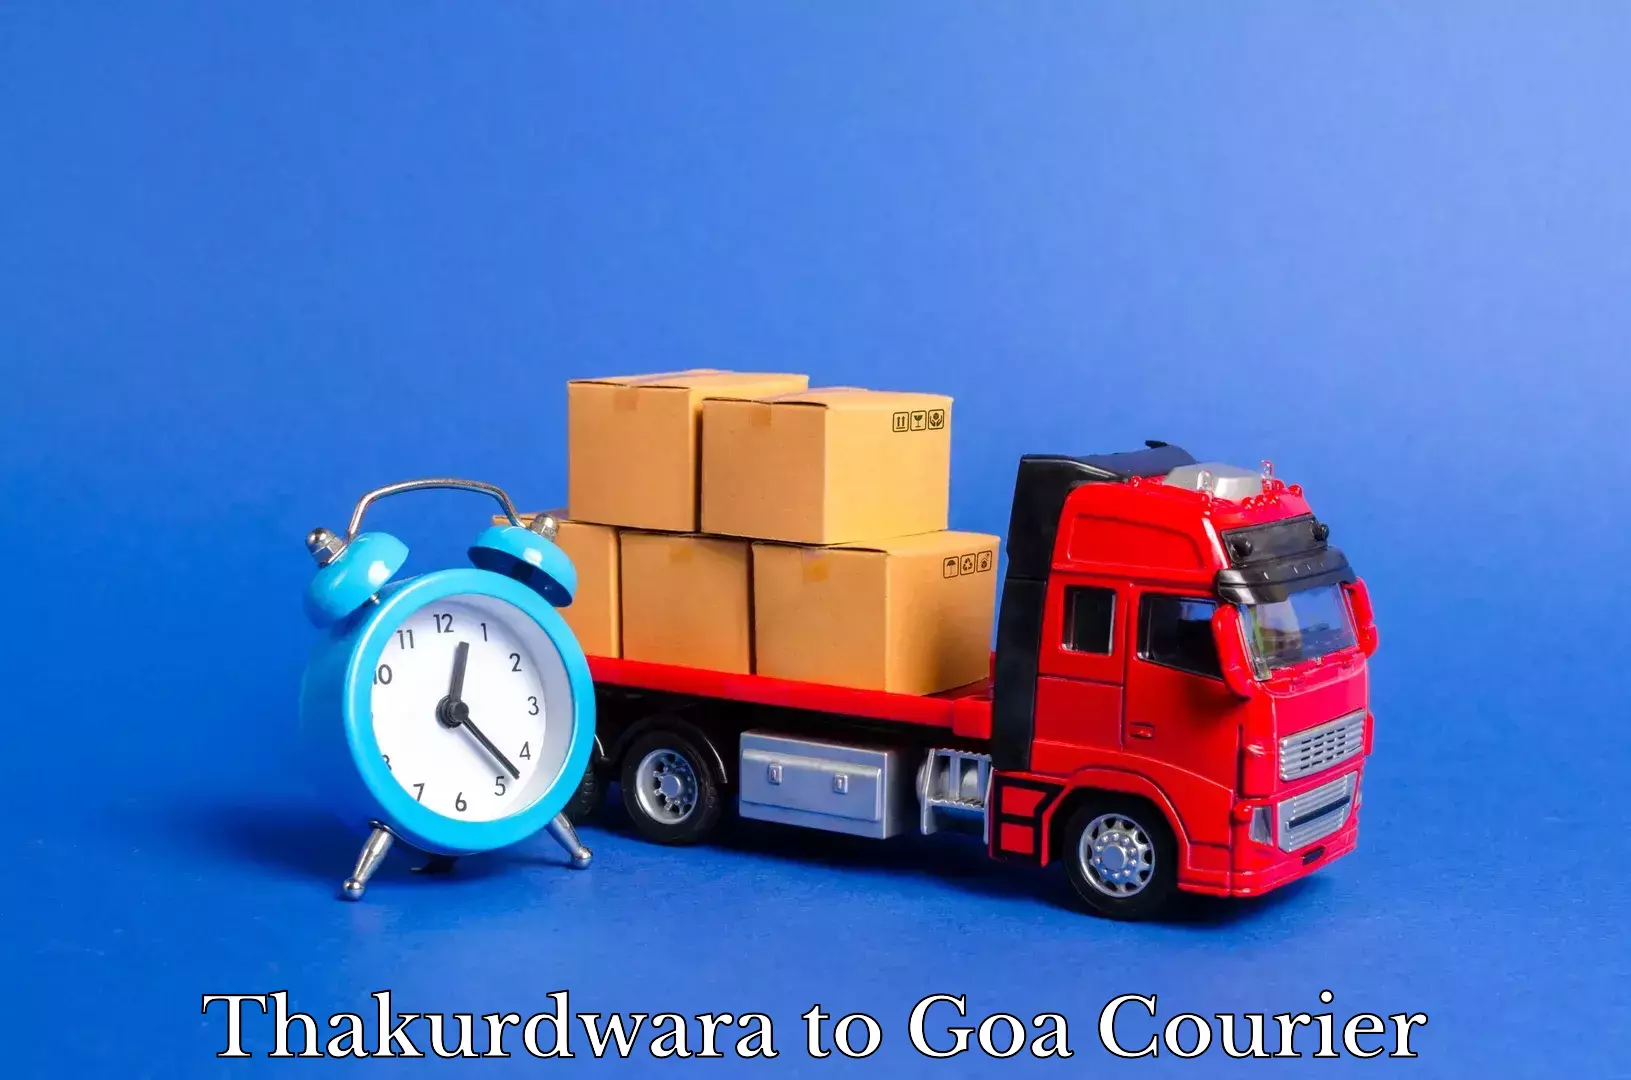 Professional furniture movers Thakurdwara to Goa